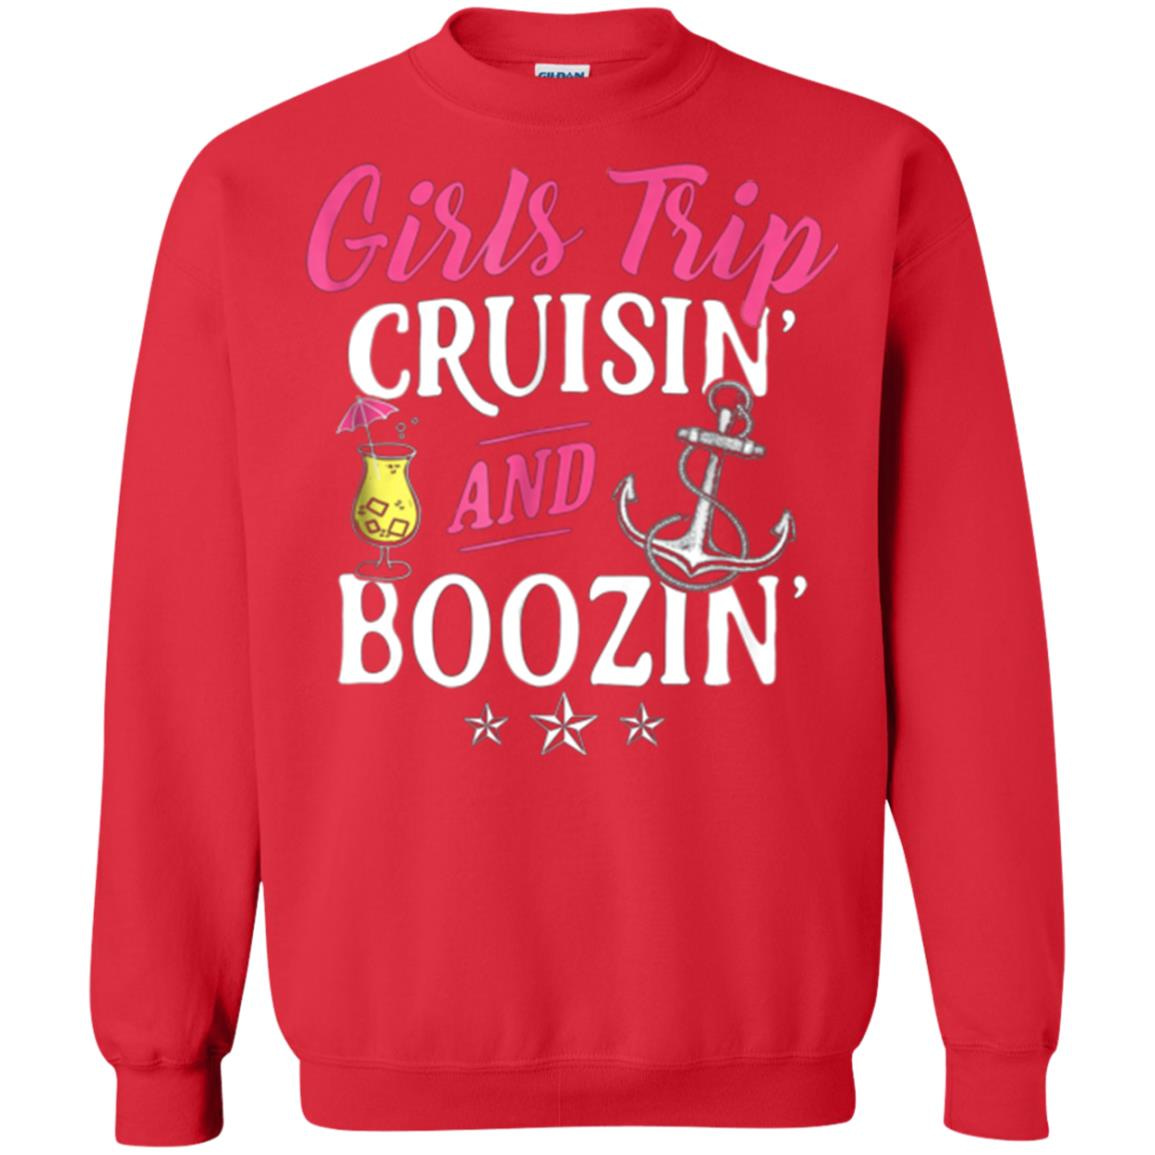 Inktee Store - Girls Trip Cruisin And Boozin Funny Cruise Vacation Sweatshirt Image